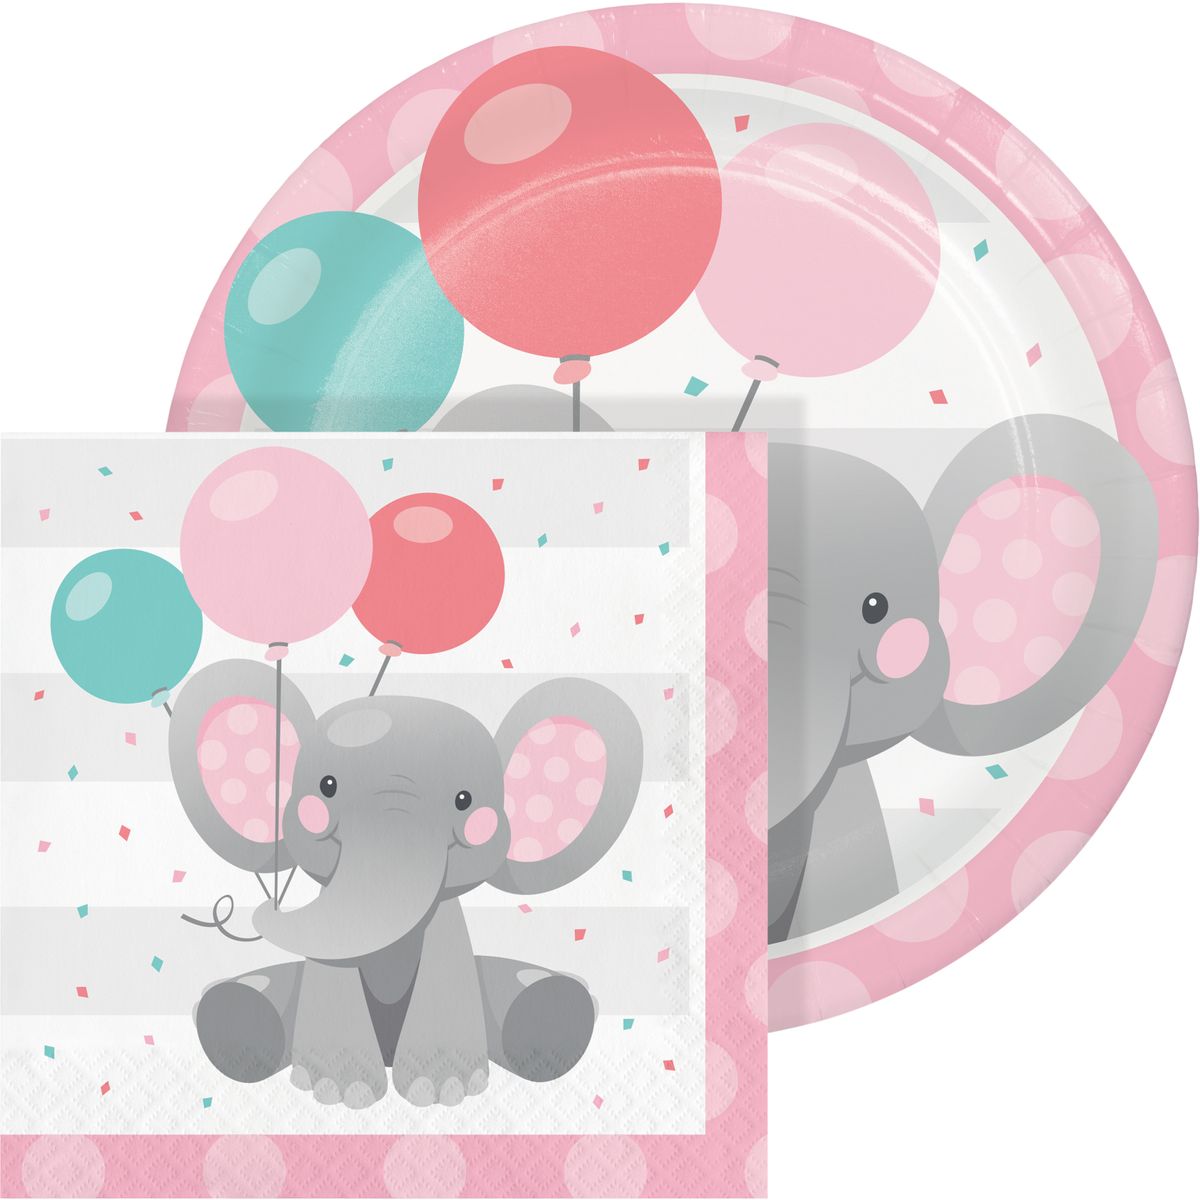 [送料無料] 魅惑のエレファント ガールズバースデーデザートキット 24名様分 [海外通販] | Enchanting Elephant Girl's Birthday Dessert Kit for 24 Guests